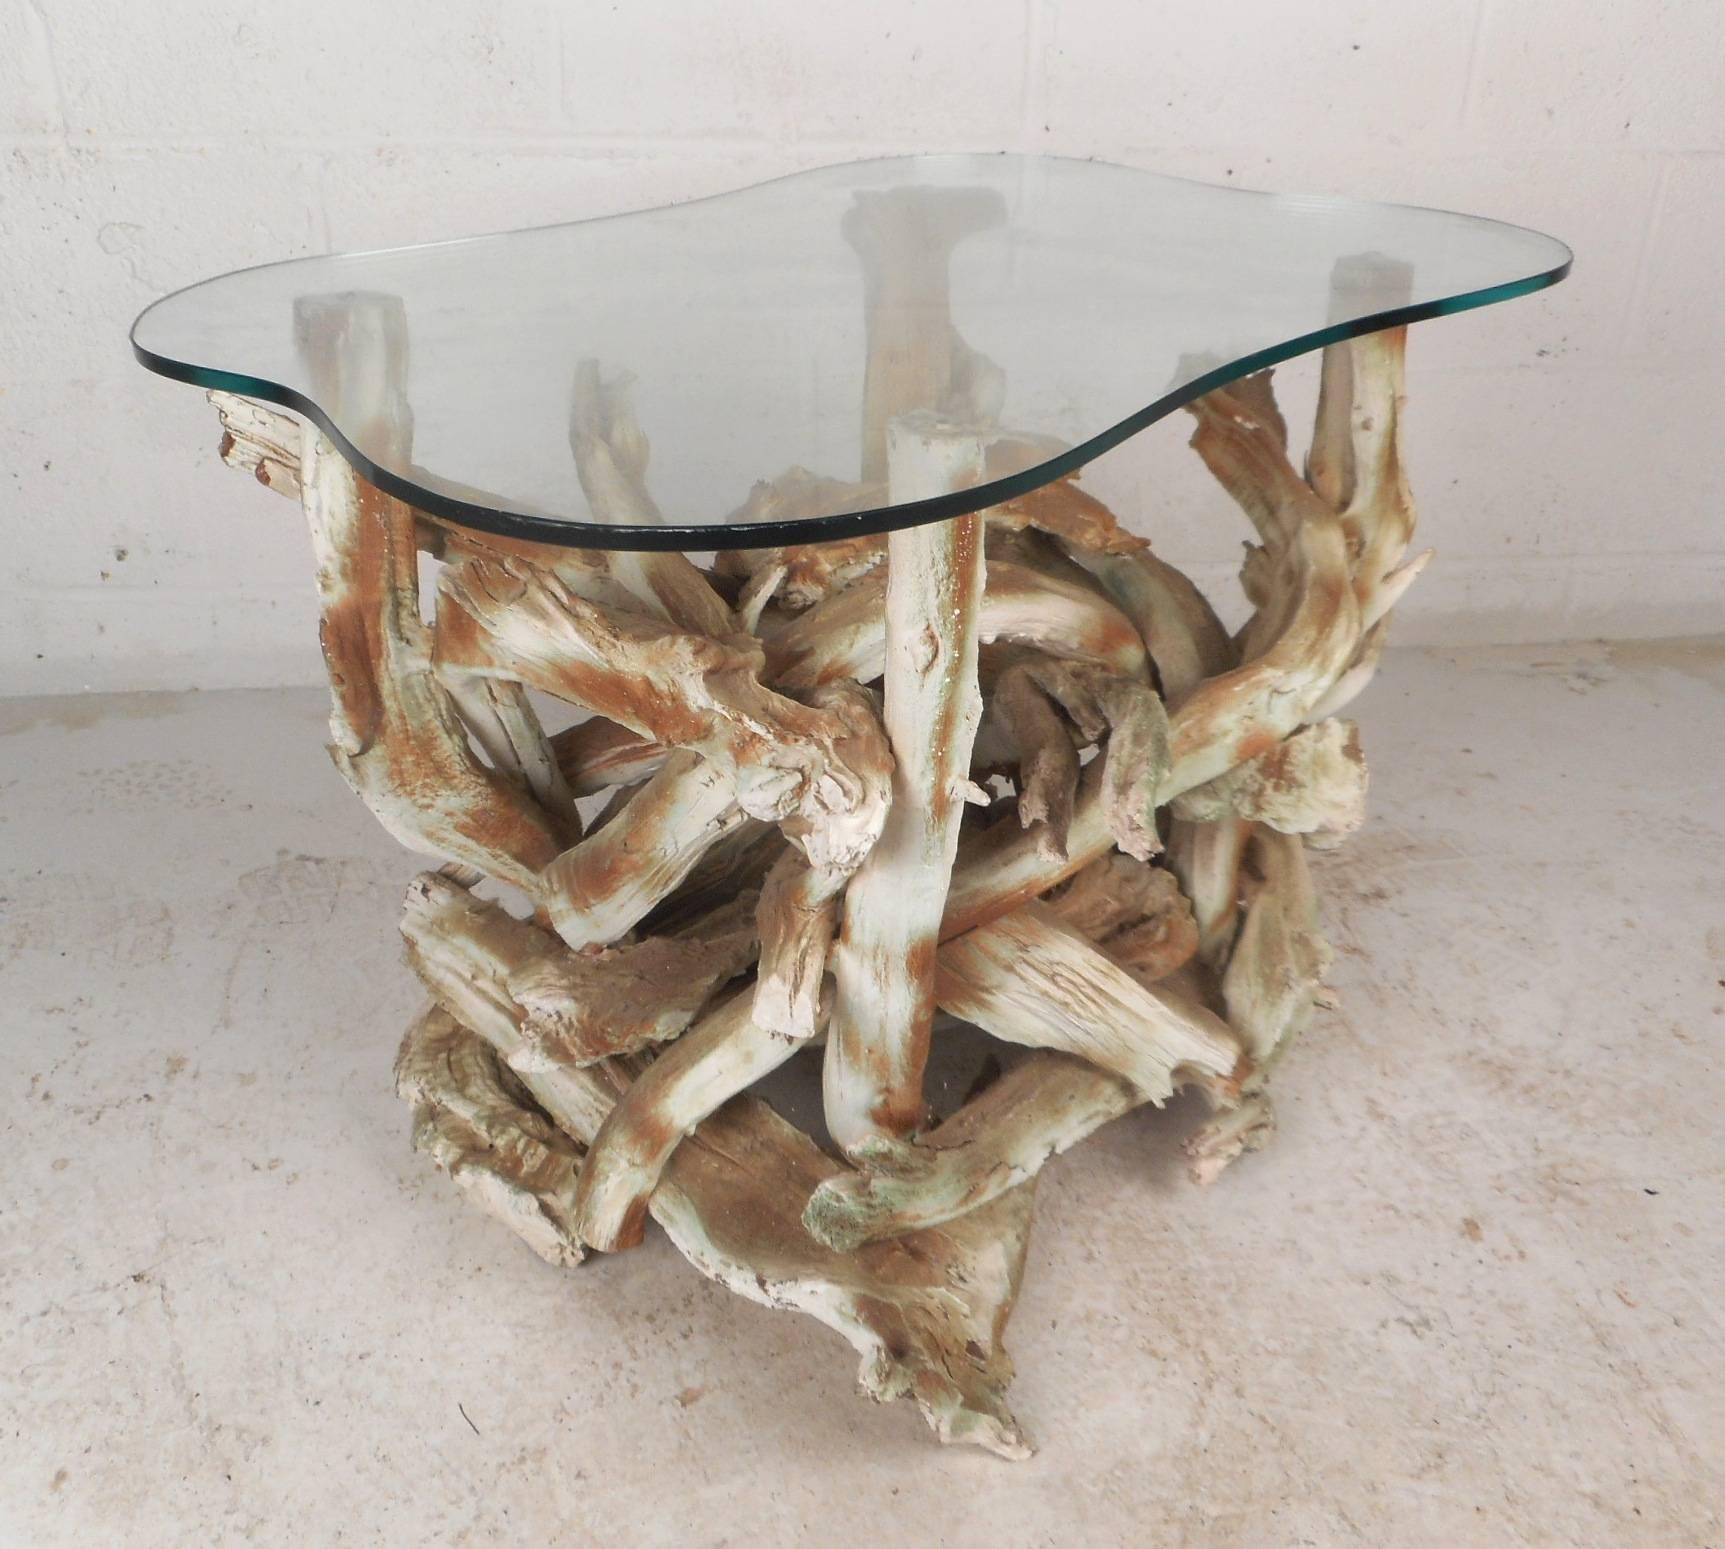 Cette superbe table d'appoint vintage moderne présente une base unique en bois flotté et un plateau en verre épais en forme d'amibe. Un design fascinant avec des détails complexes et de légères teintes de vert sur la base. Cette table d'appoint